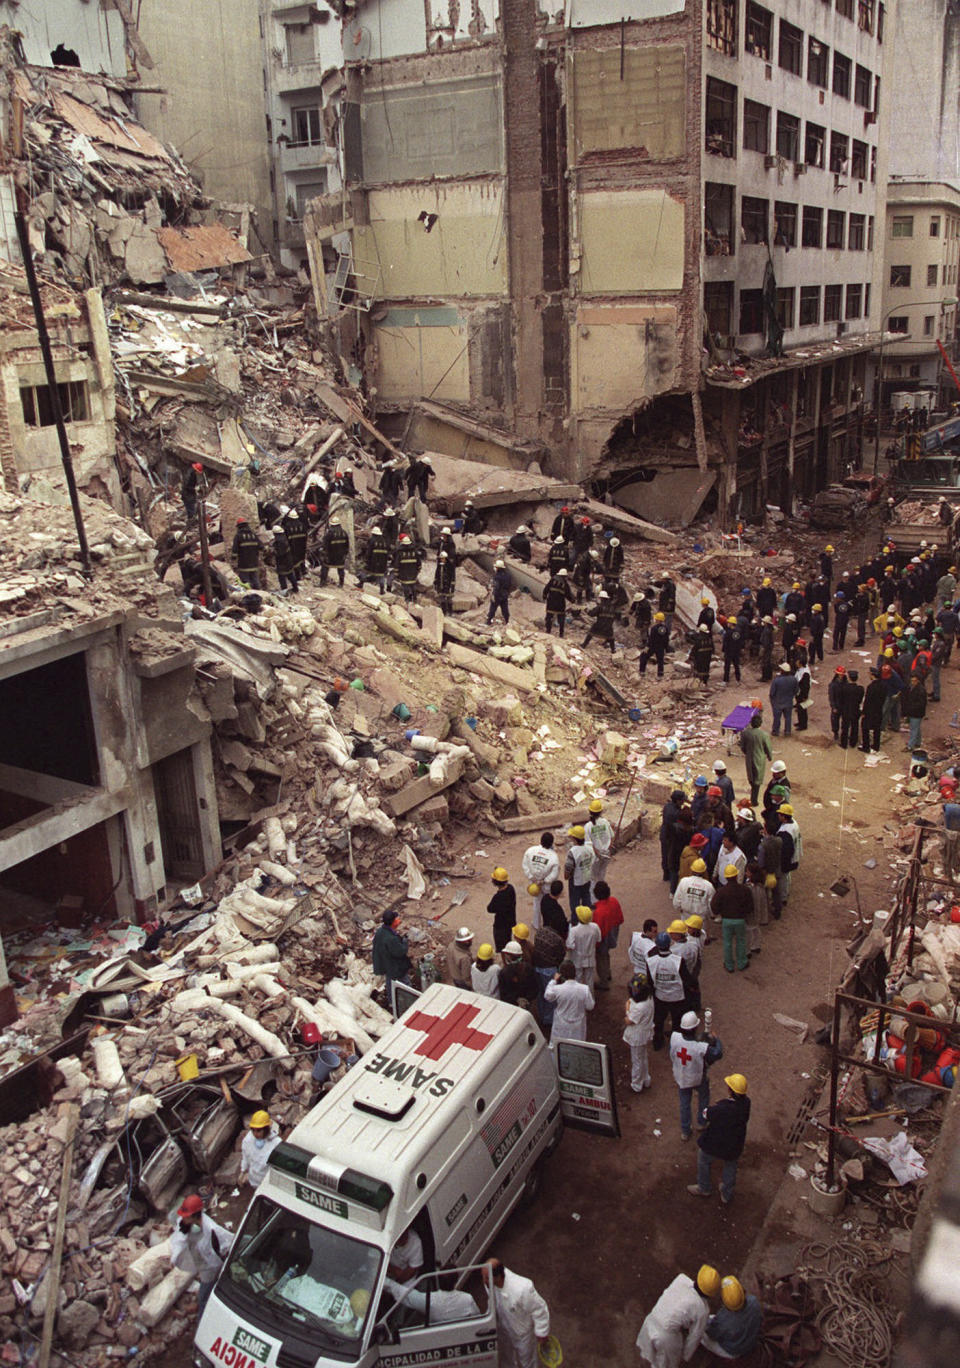 ARCHIVO - Bomberos y rescatistas buscan entre los escombros del Centro de la Comunidad Judía de Buenos Aires, tras la explosión de un coche bomba que derrumbó el edificio el 18 de julio de 1994. Fue el peor ataque de la historia de Argentina, que dejó 85 muertos y 300 heridos. Sucedió dos años después de otra explosión en 1992 en la embajada de Israel en Argentina, que mató a 22 personas. (AP Foto/Alejandro Pagni, Archivo)